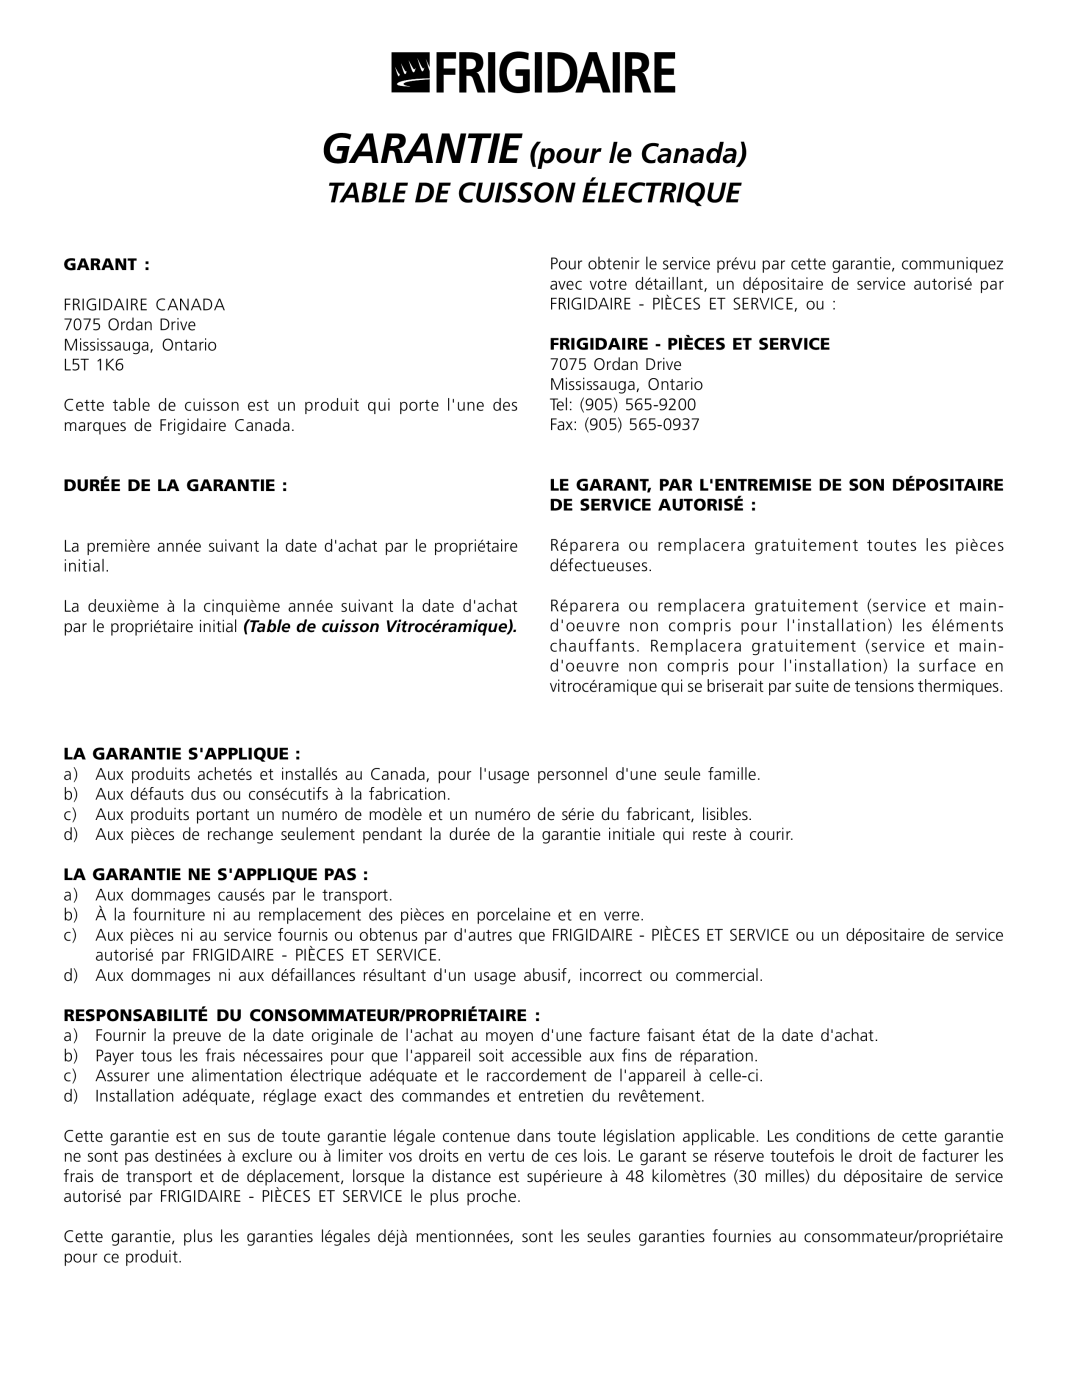 Frigidaire 318200603 GARANTIE pour le Canada TABLE DE CUISSON ÉLECTRIQUE, Durée De La Garantie, La Garantie Sapplique 